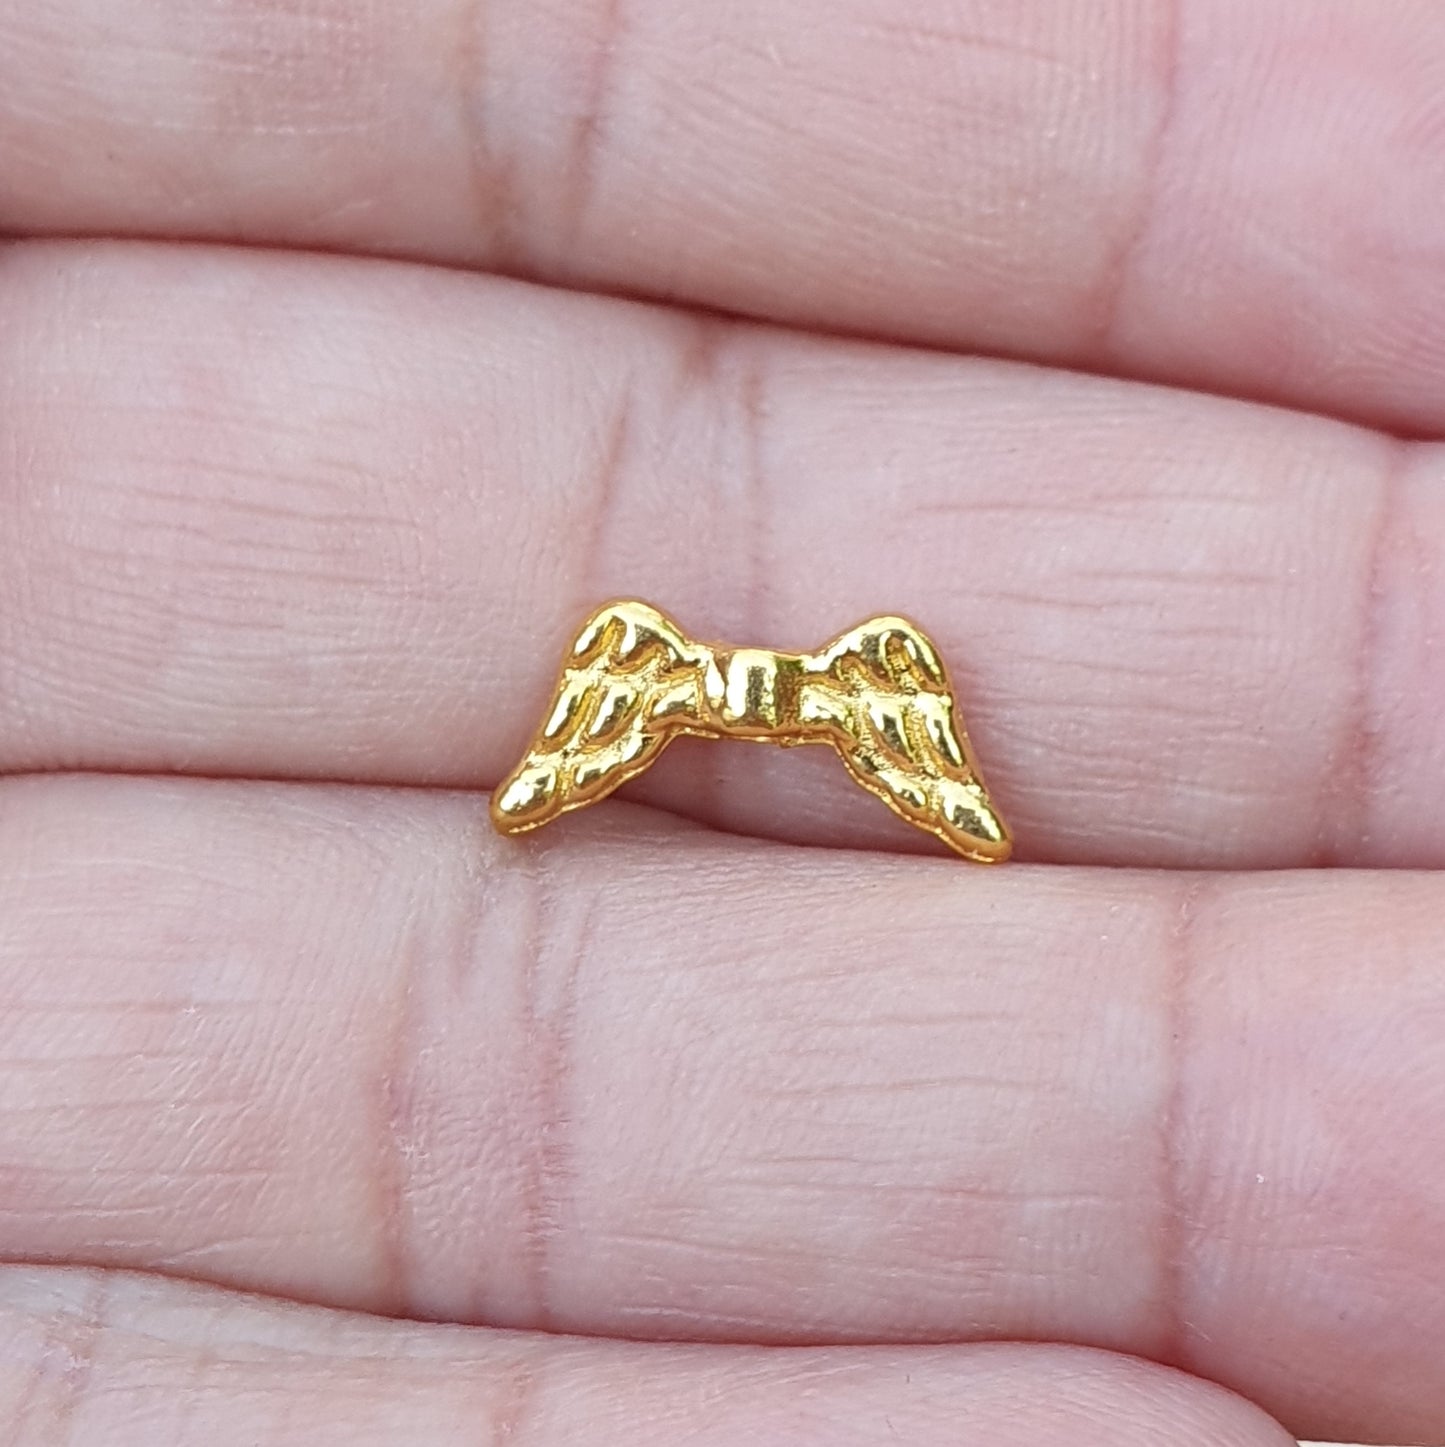 8 kleine Engelsflügel Metallperlen, goldfarbig, 14mm, für Perlenengel